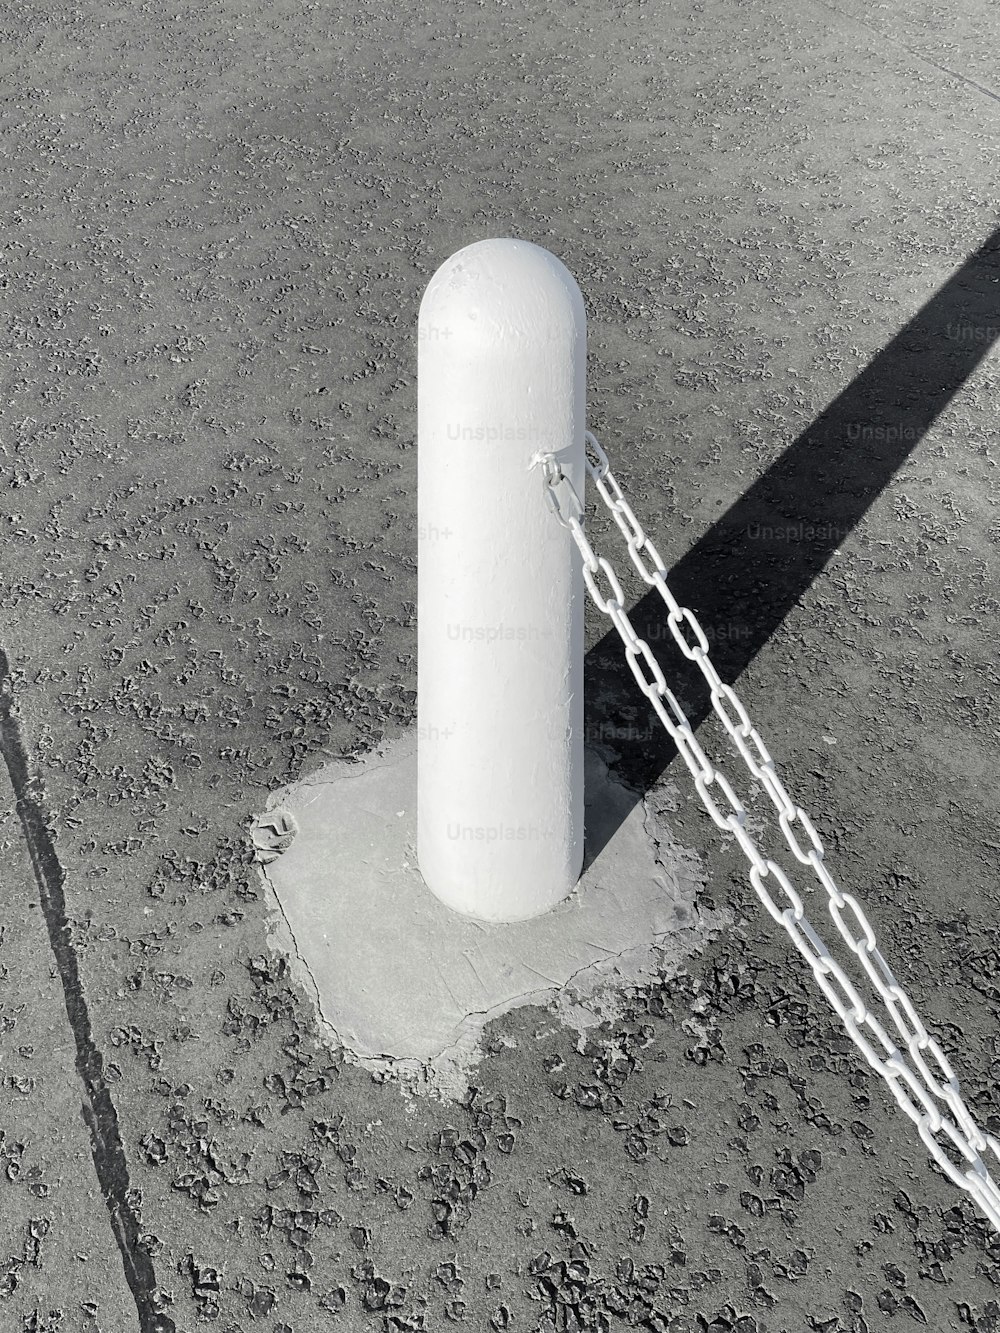 Un gran objeto blanco encadenado a un poste